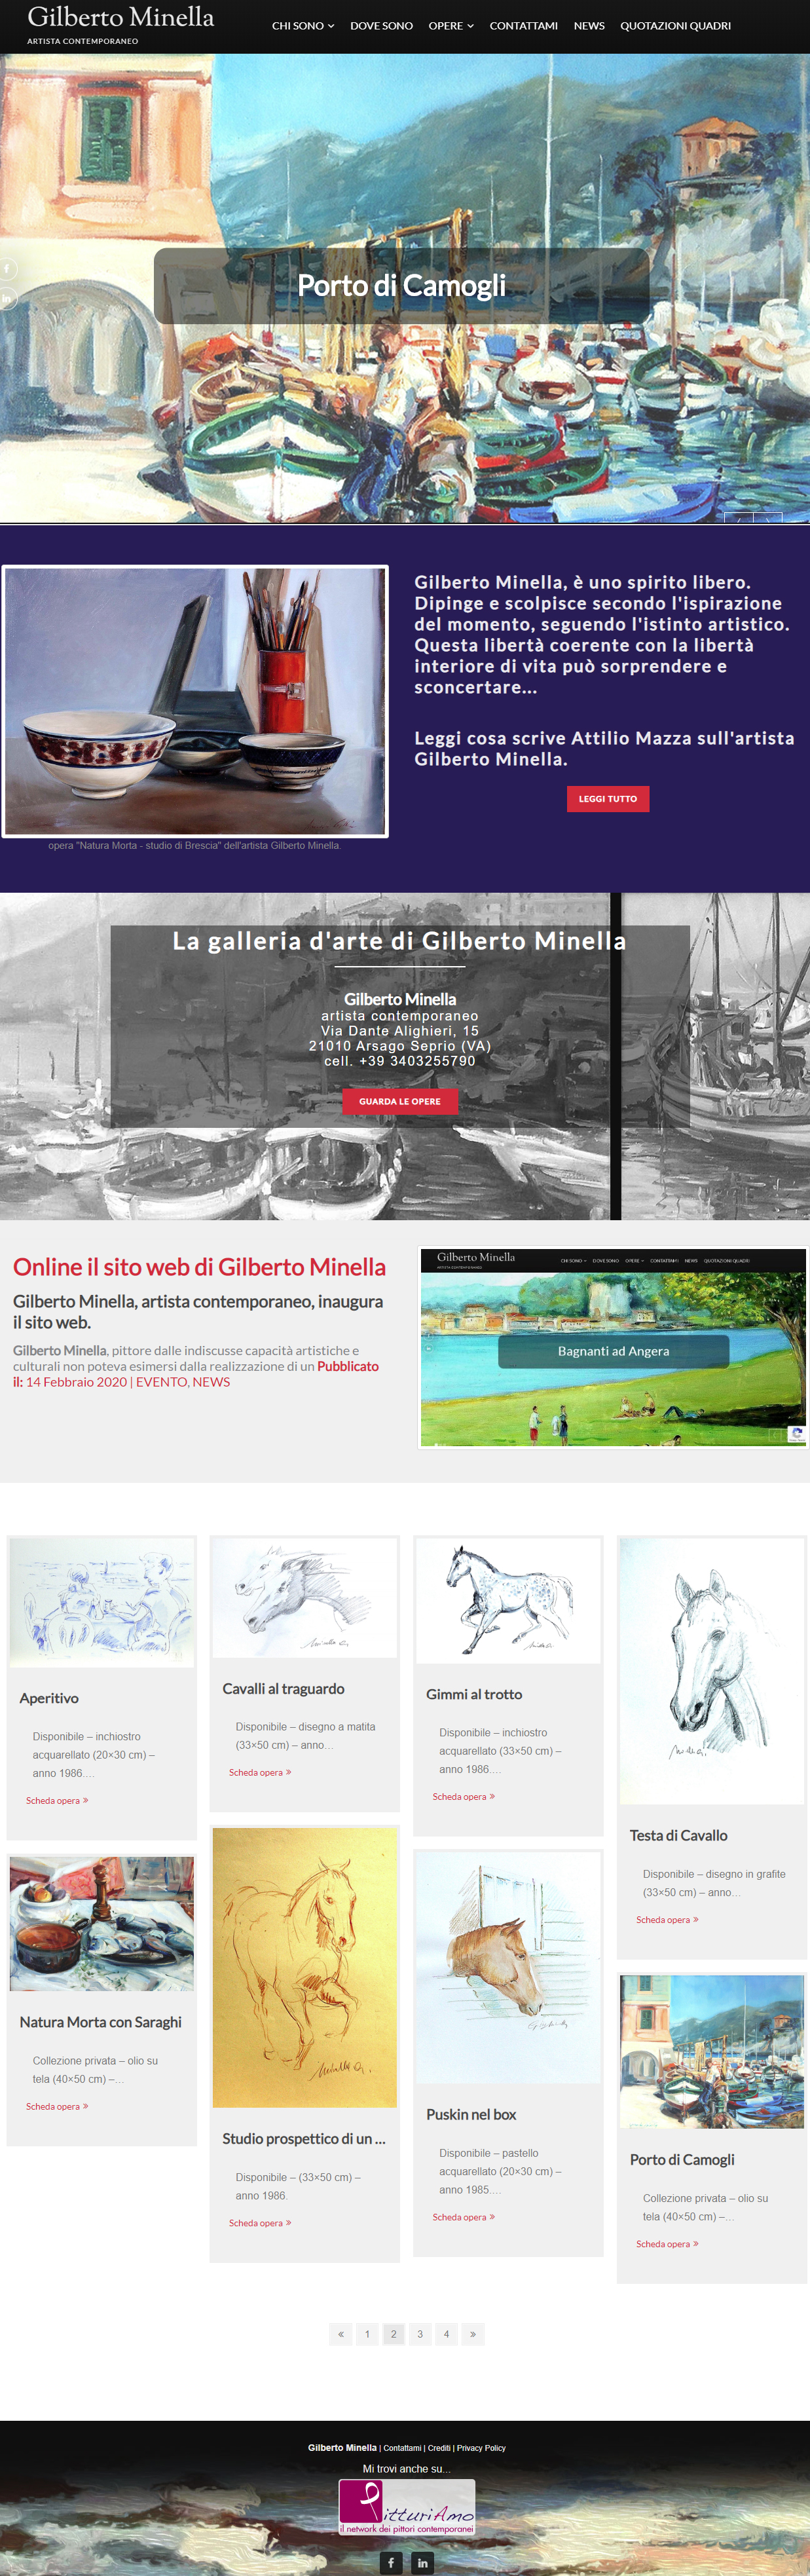 Il sito del pittore Gilberto Minella - Homepage